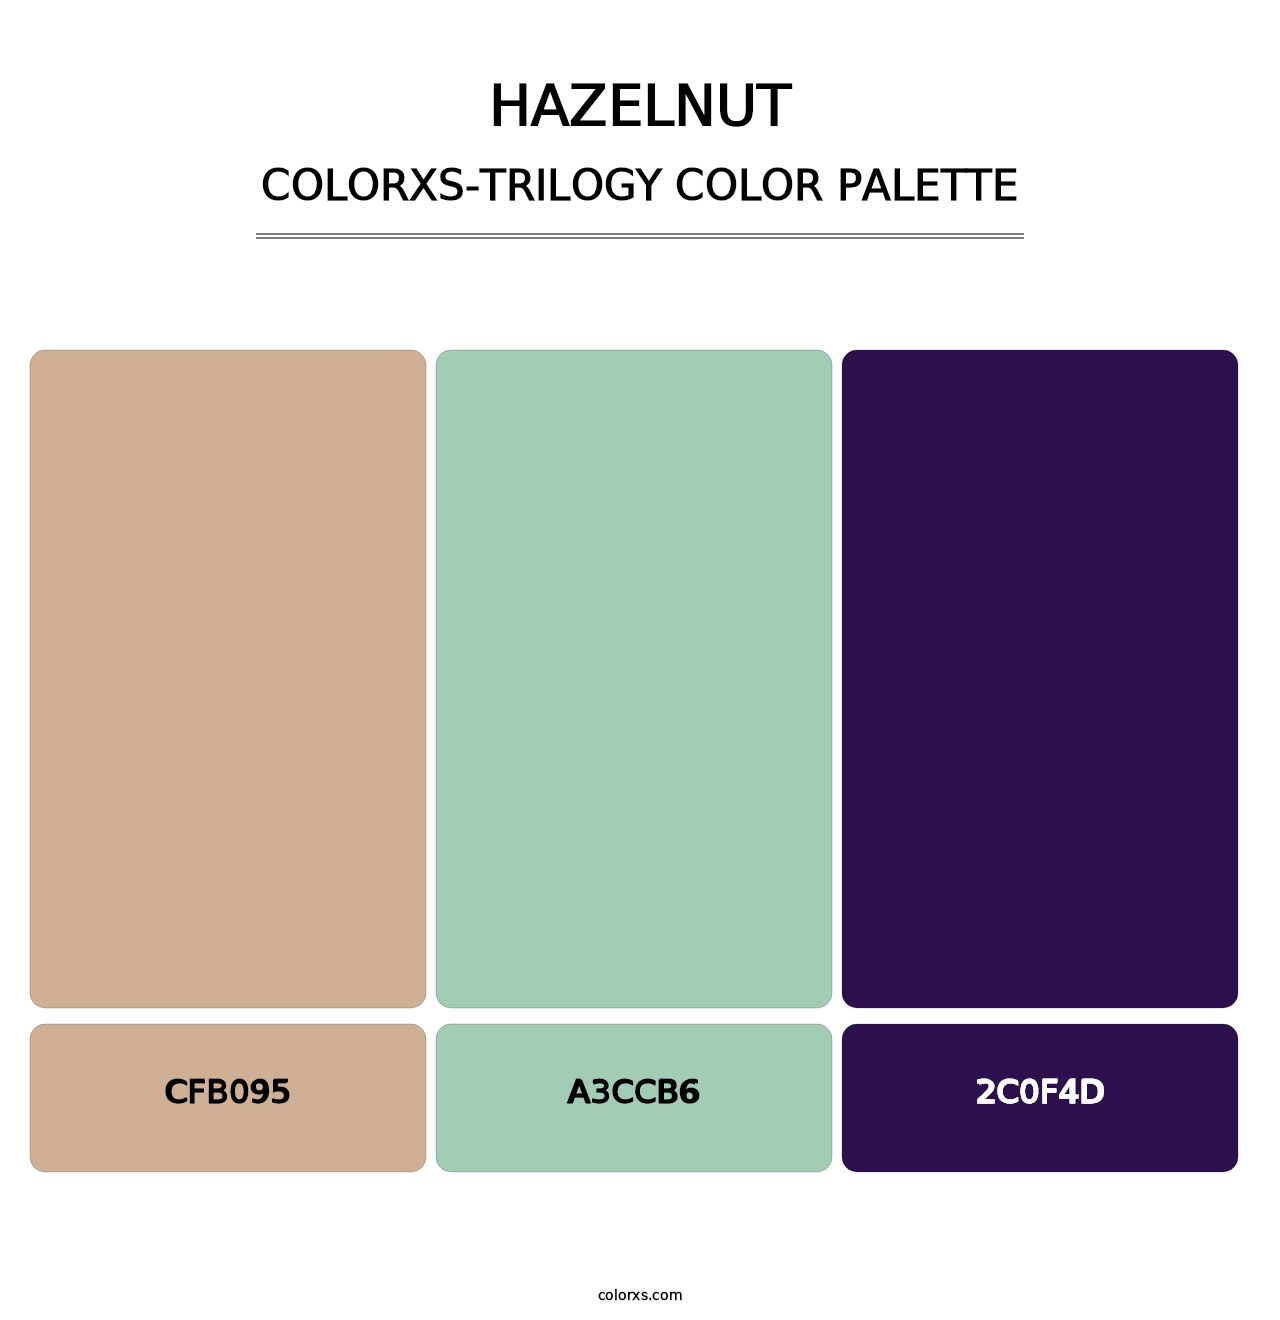 Hazelnut - Colorxs Trilogy Palette